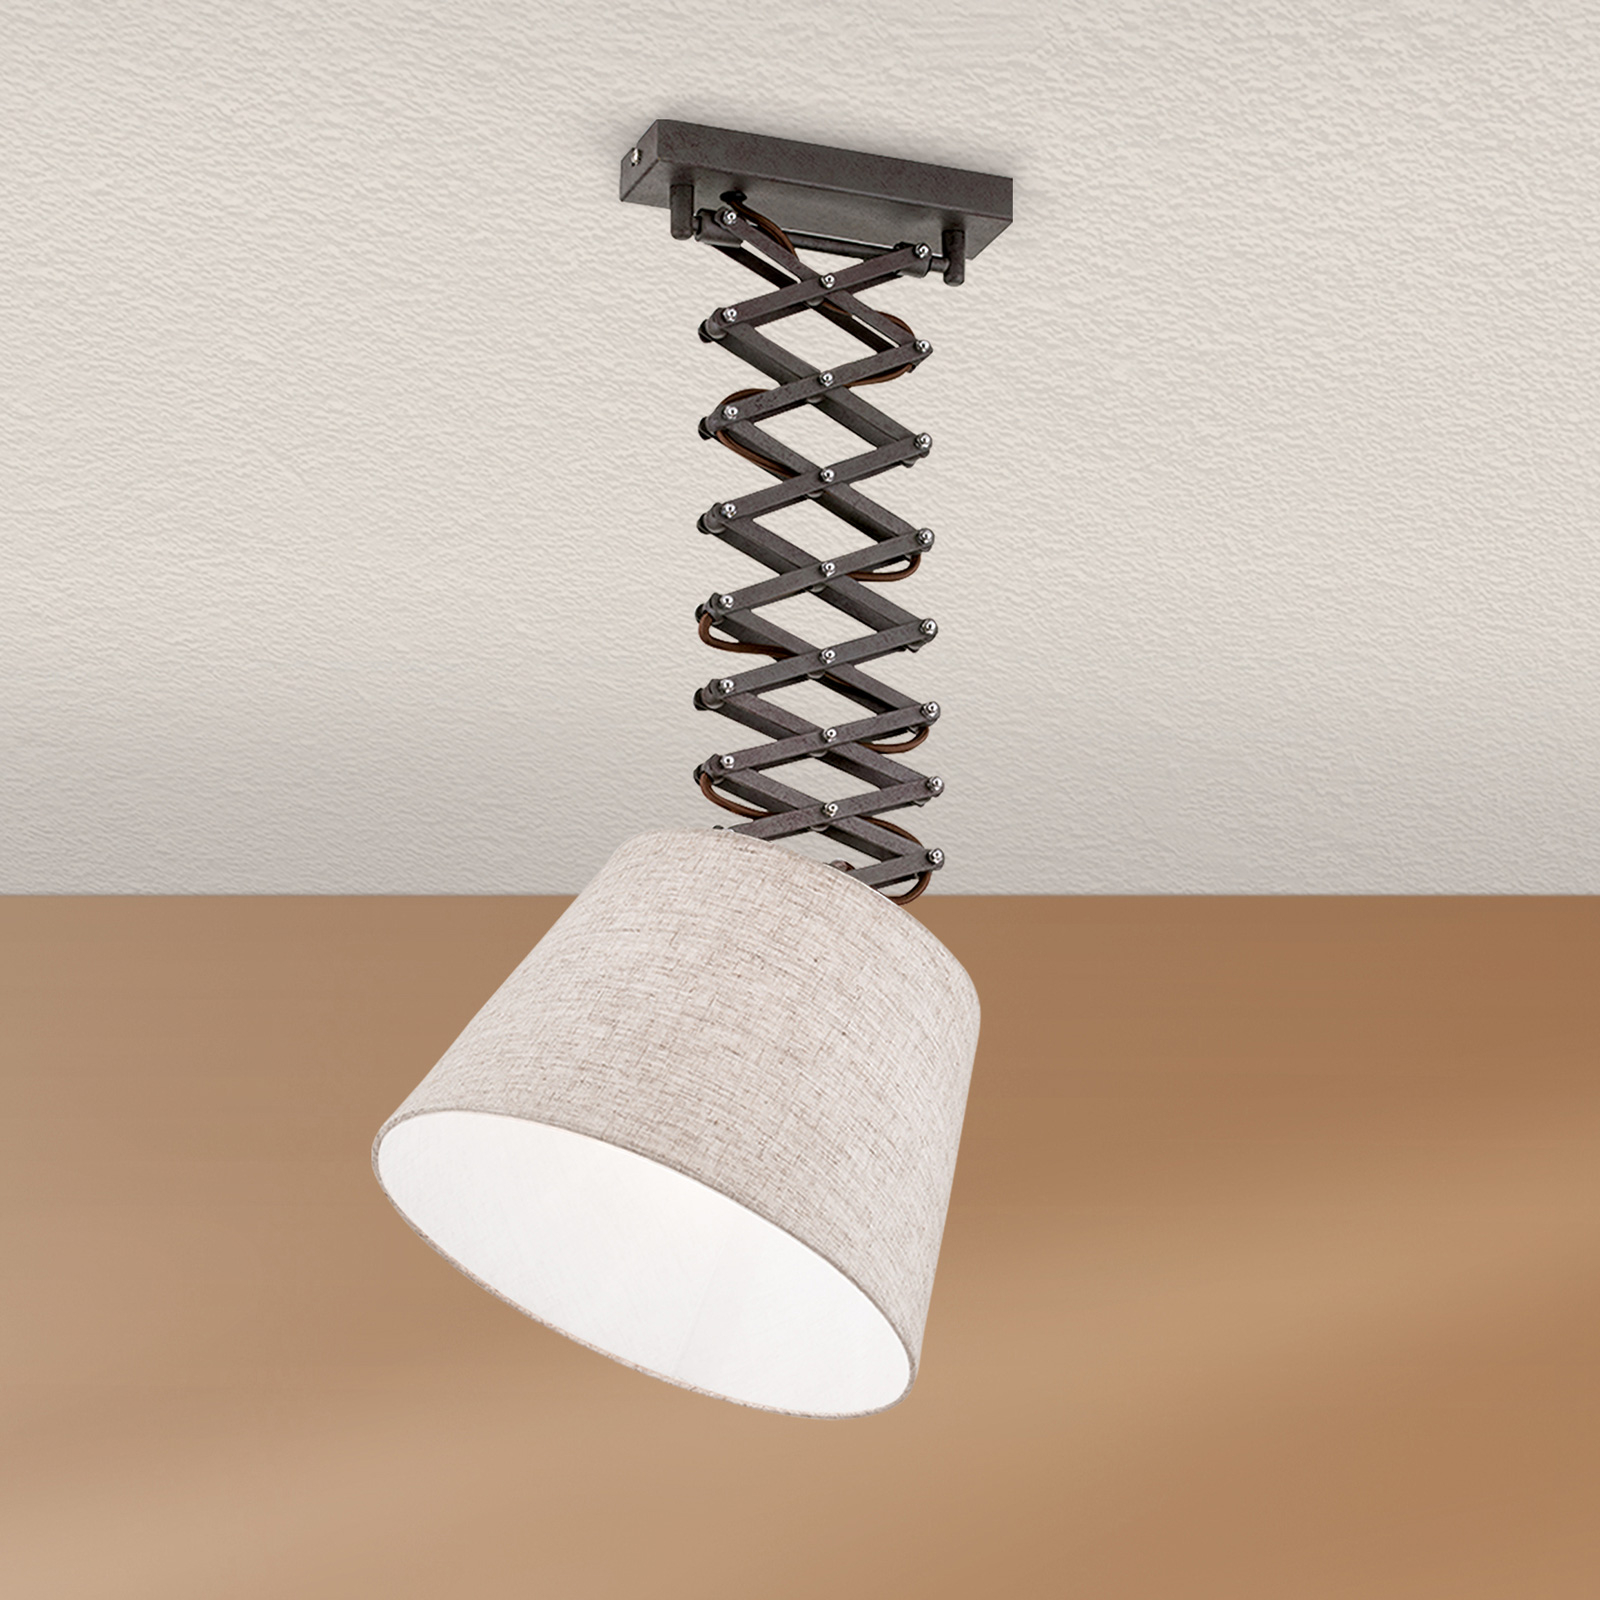 Factory hængelampe i industridesign